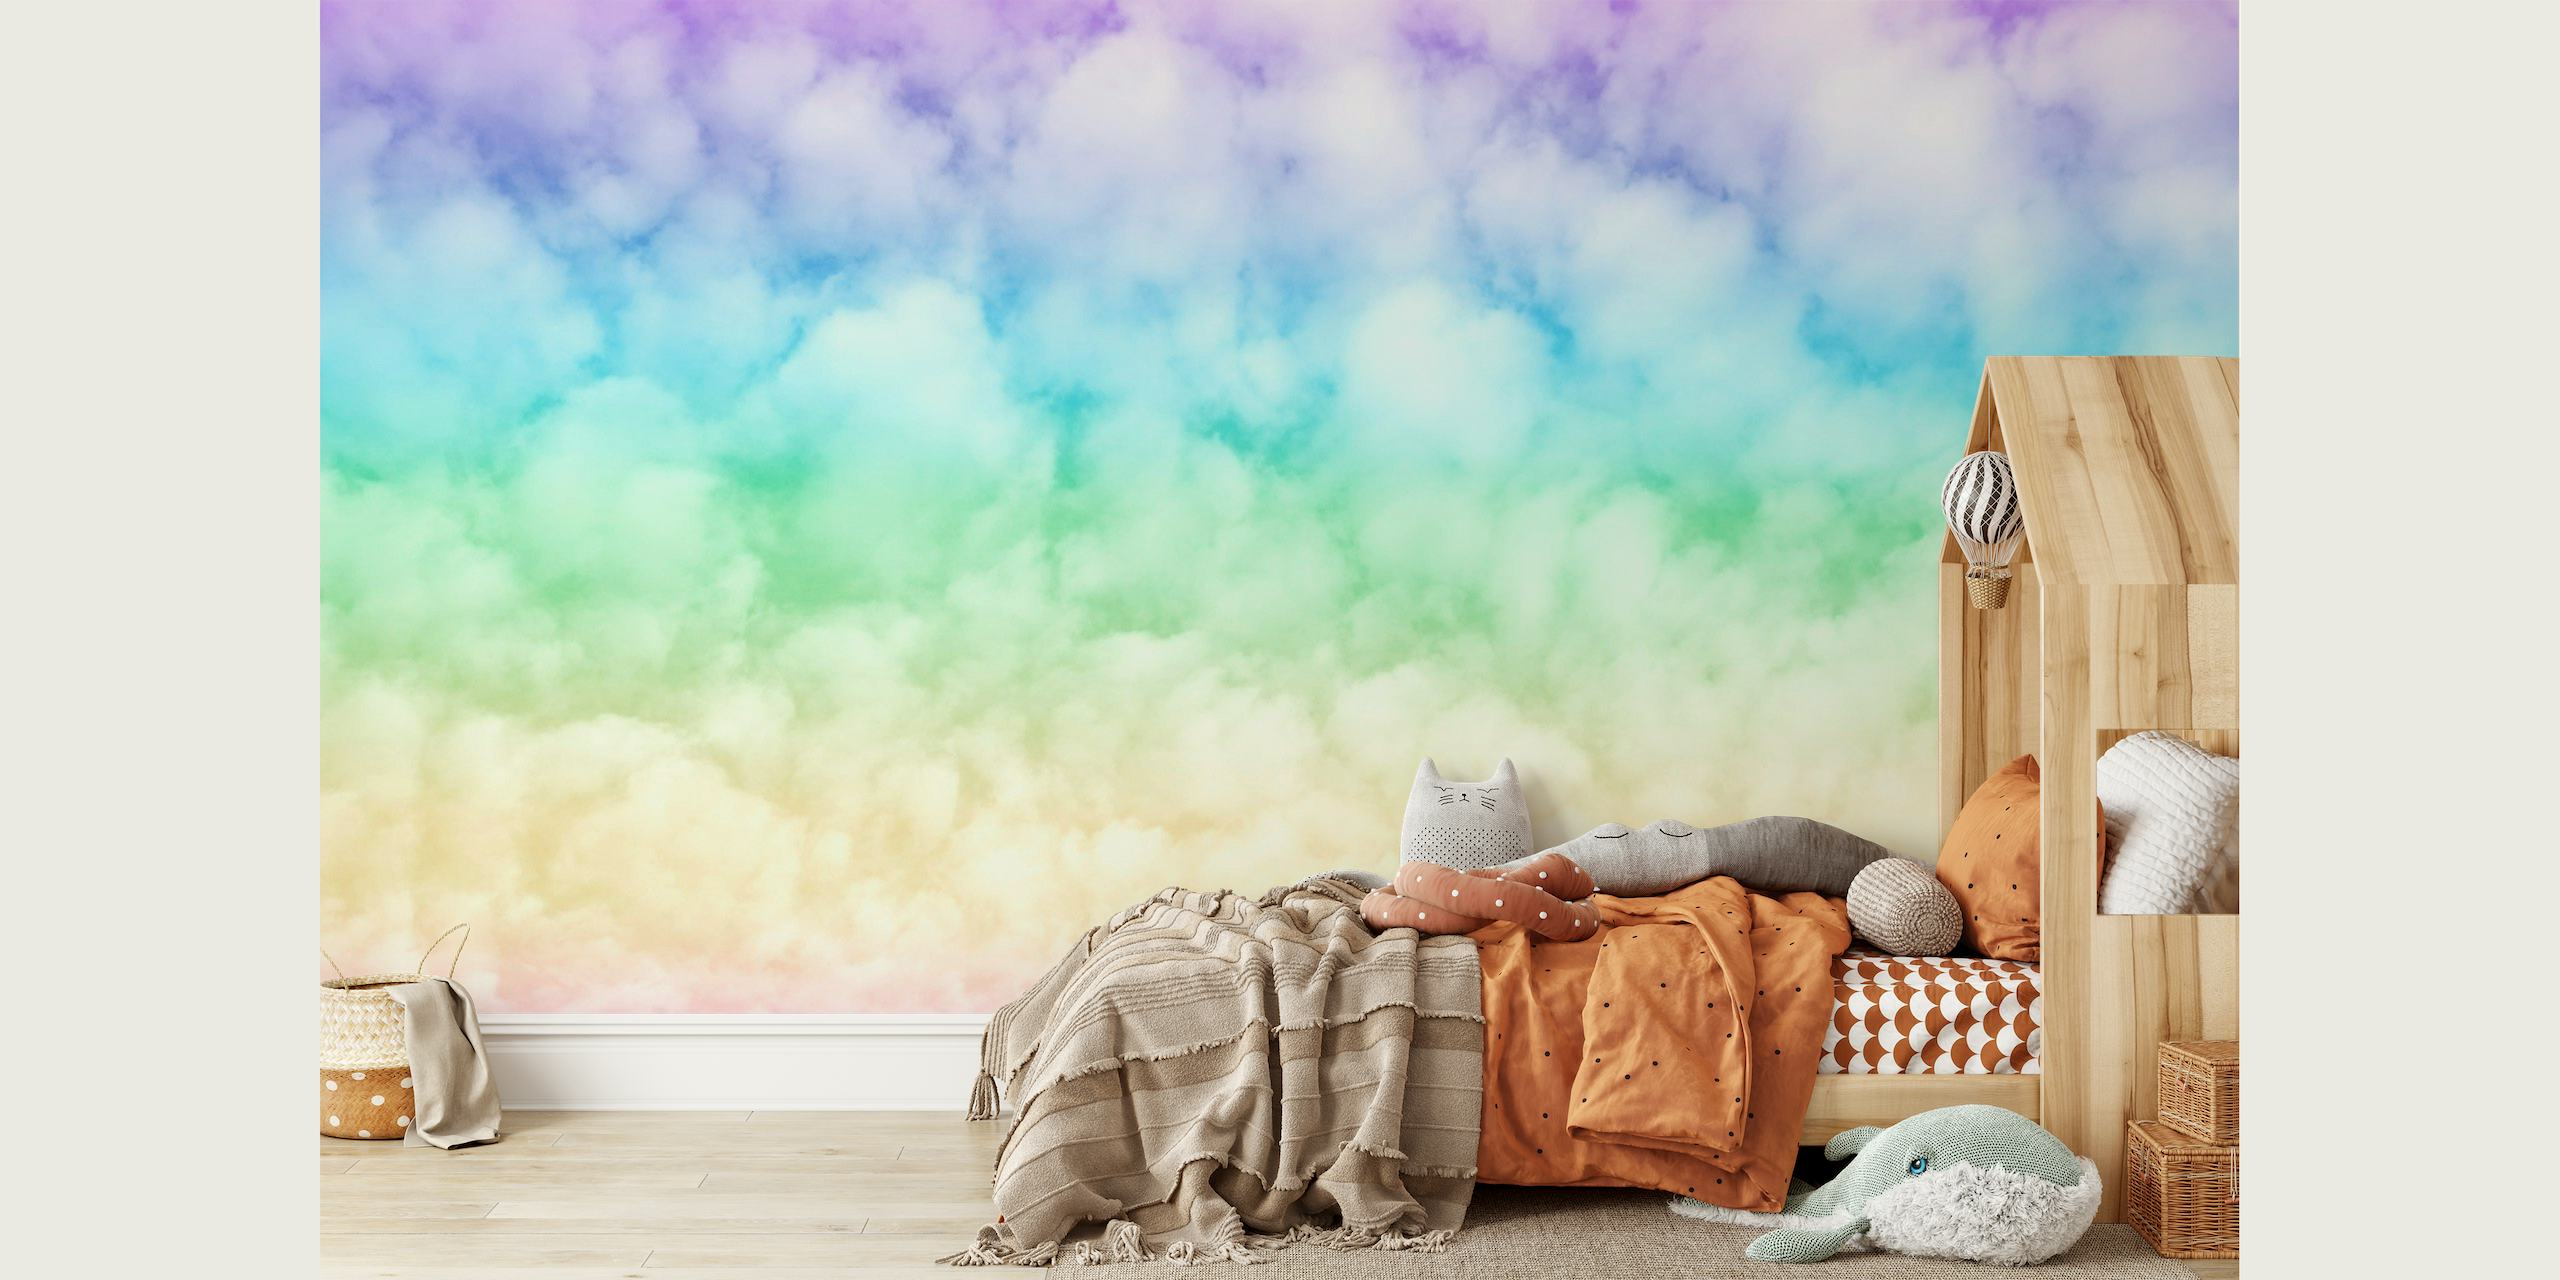 Unicorn Rainbow Clouds 2 papel pintado